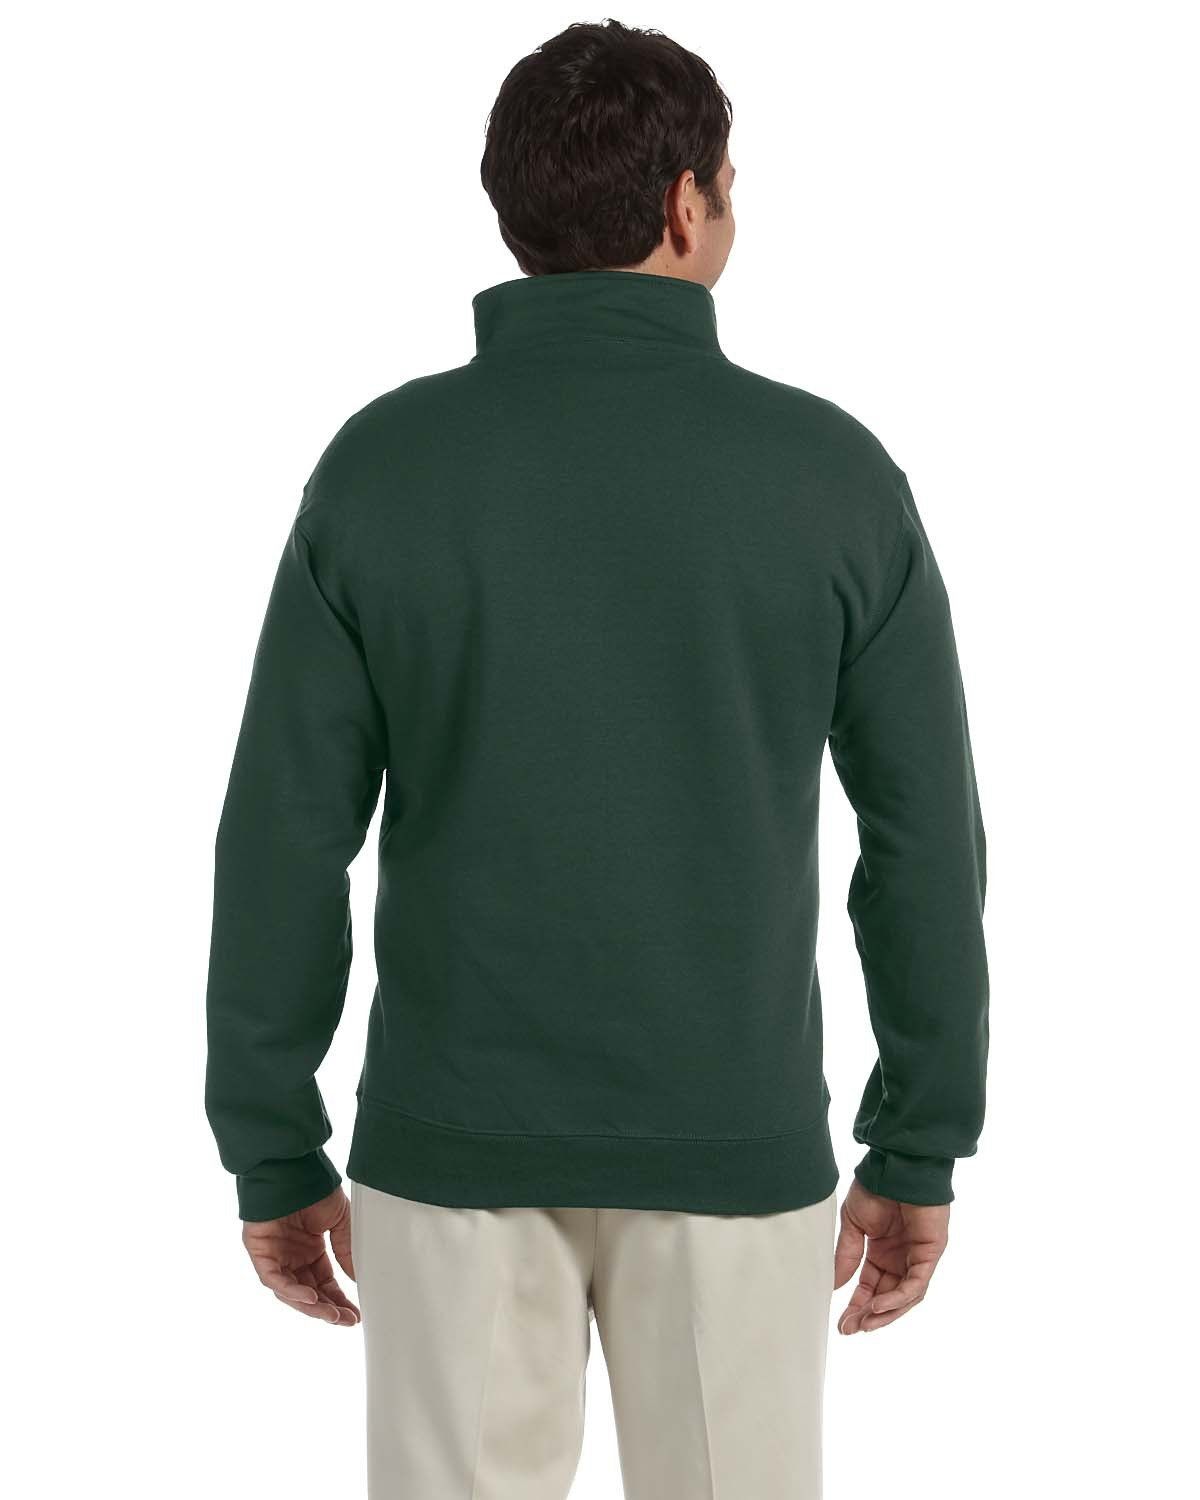 'Jerzees 4528 Adult Super Sweats NuBlend Fleece Quarter Zip Pullover'